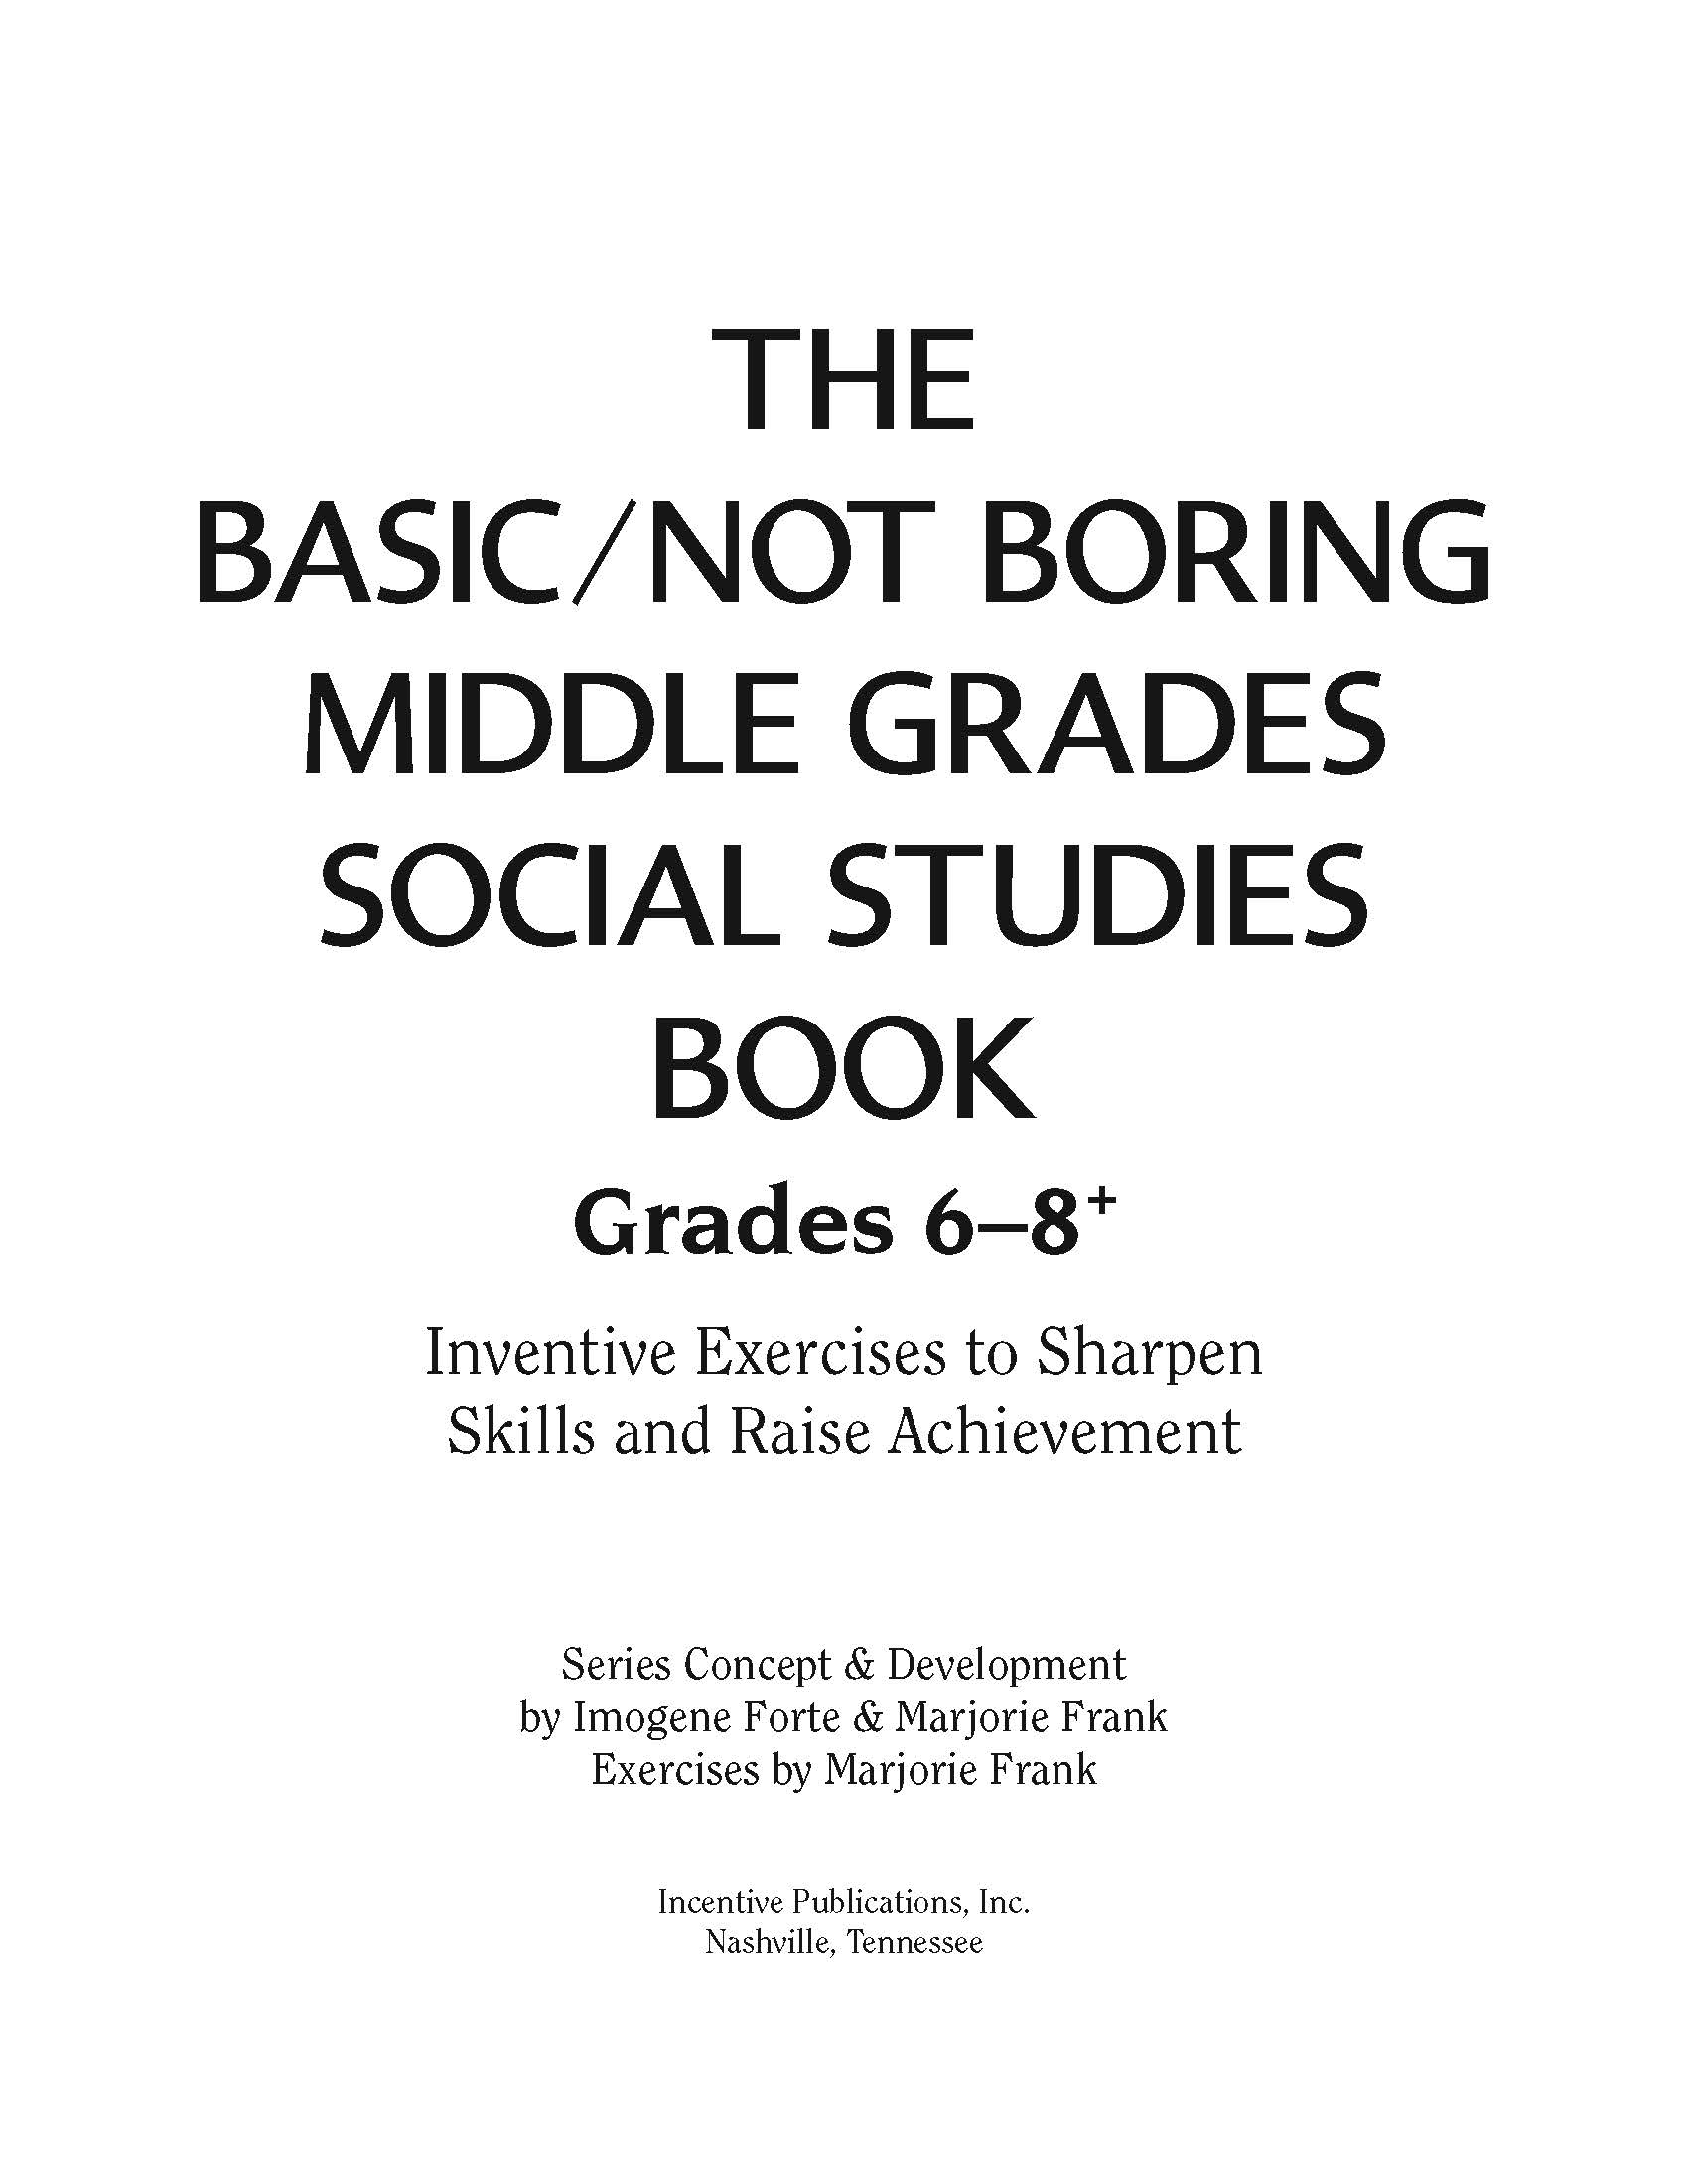 gace middle grades social studies practice questions